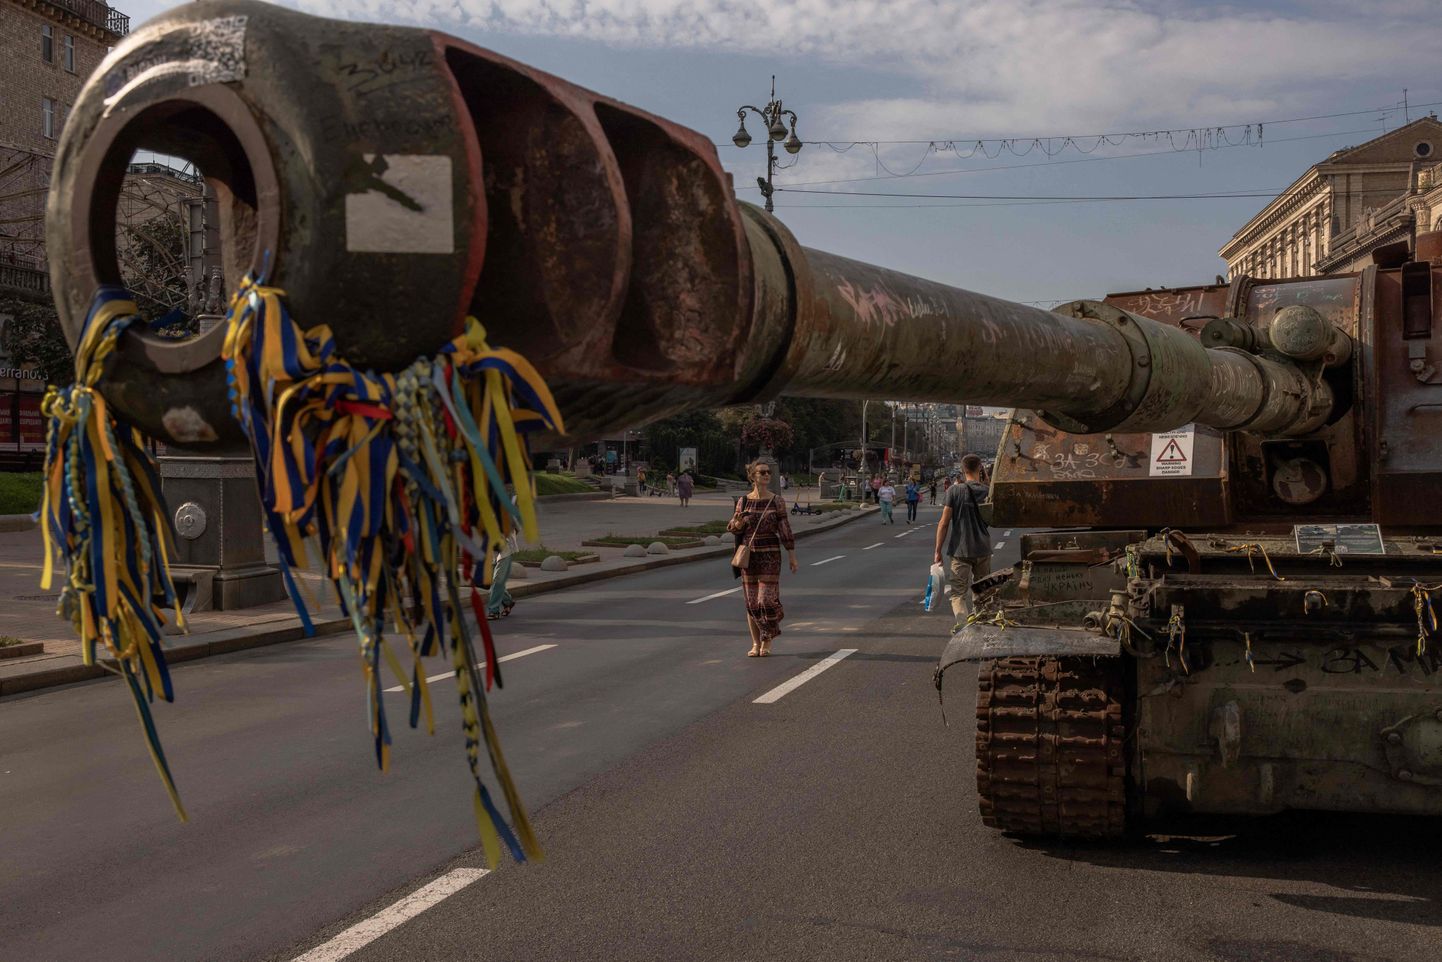 Hävitatud Vene tanke ja soomusmasinaid on näha Ukraina pealinna Kiievi kesklinnas